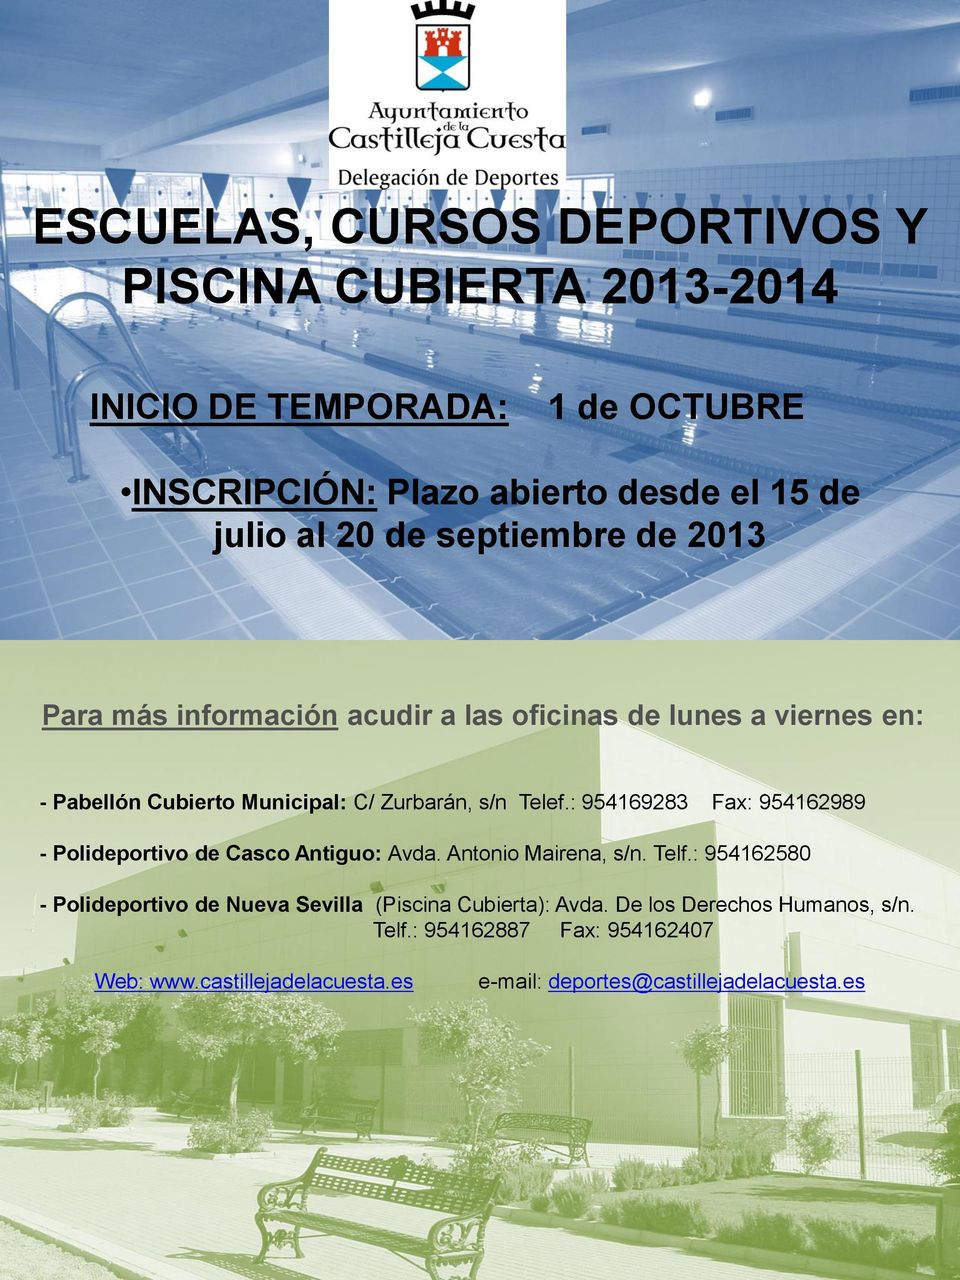 : 954169283 Fax: 954162989 - Polideportivo de Casco Antiguo: Avda. Antonio Mairena, s/n. Telf.